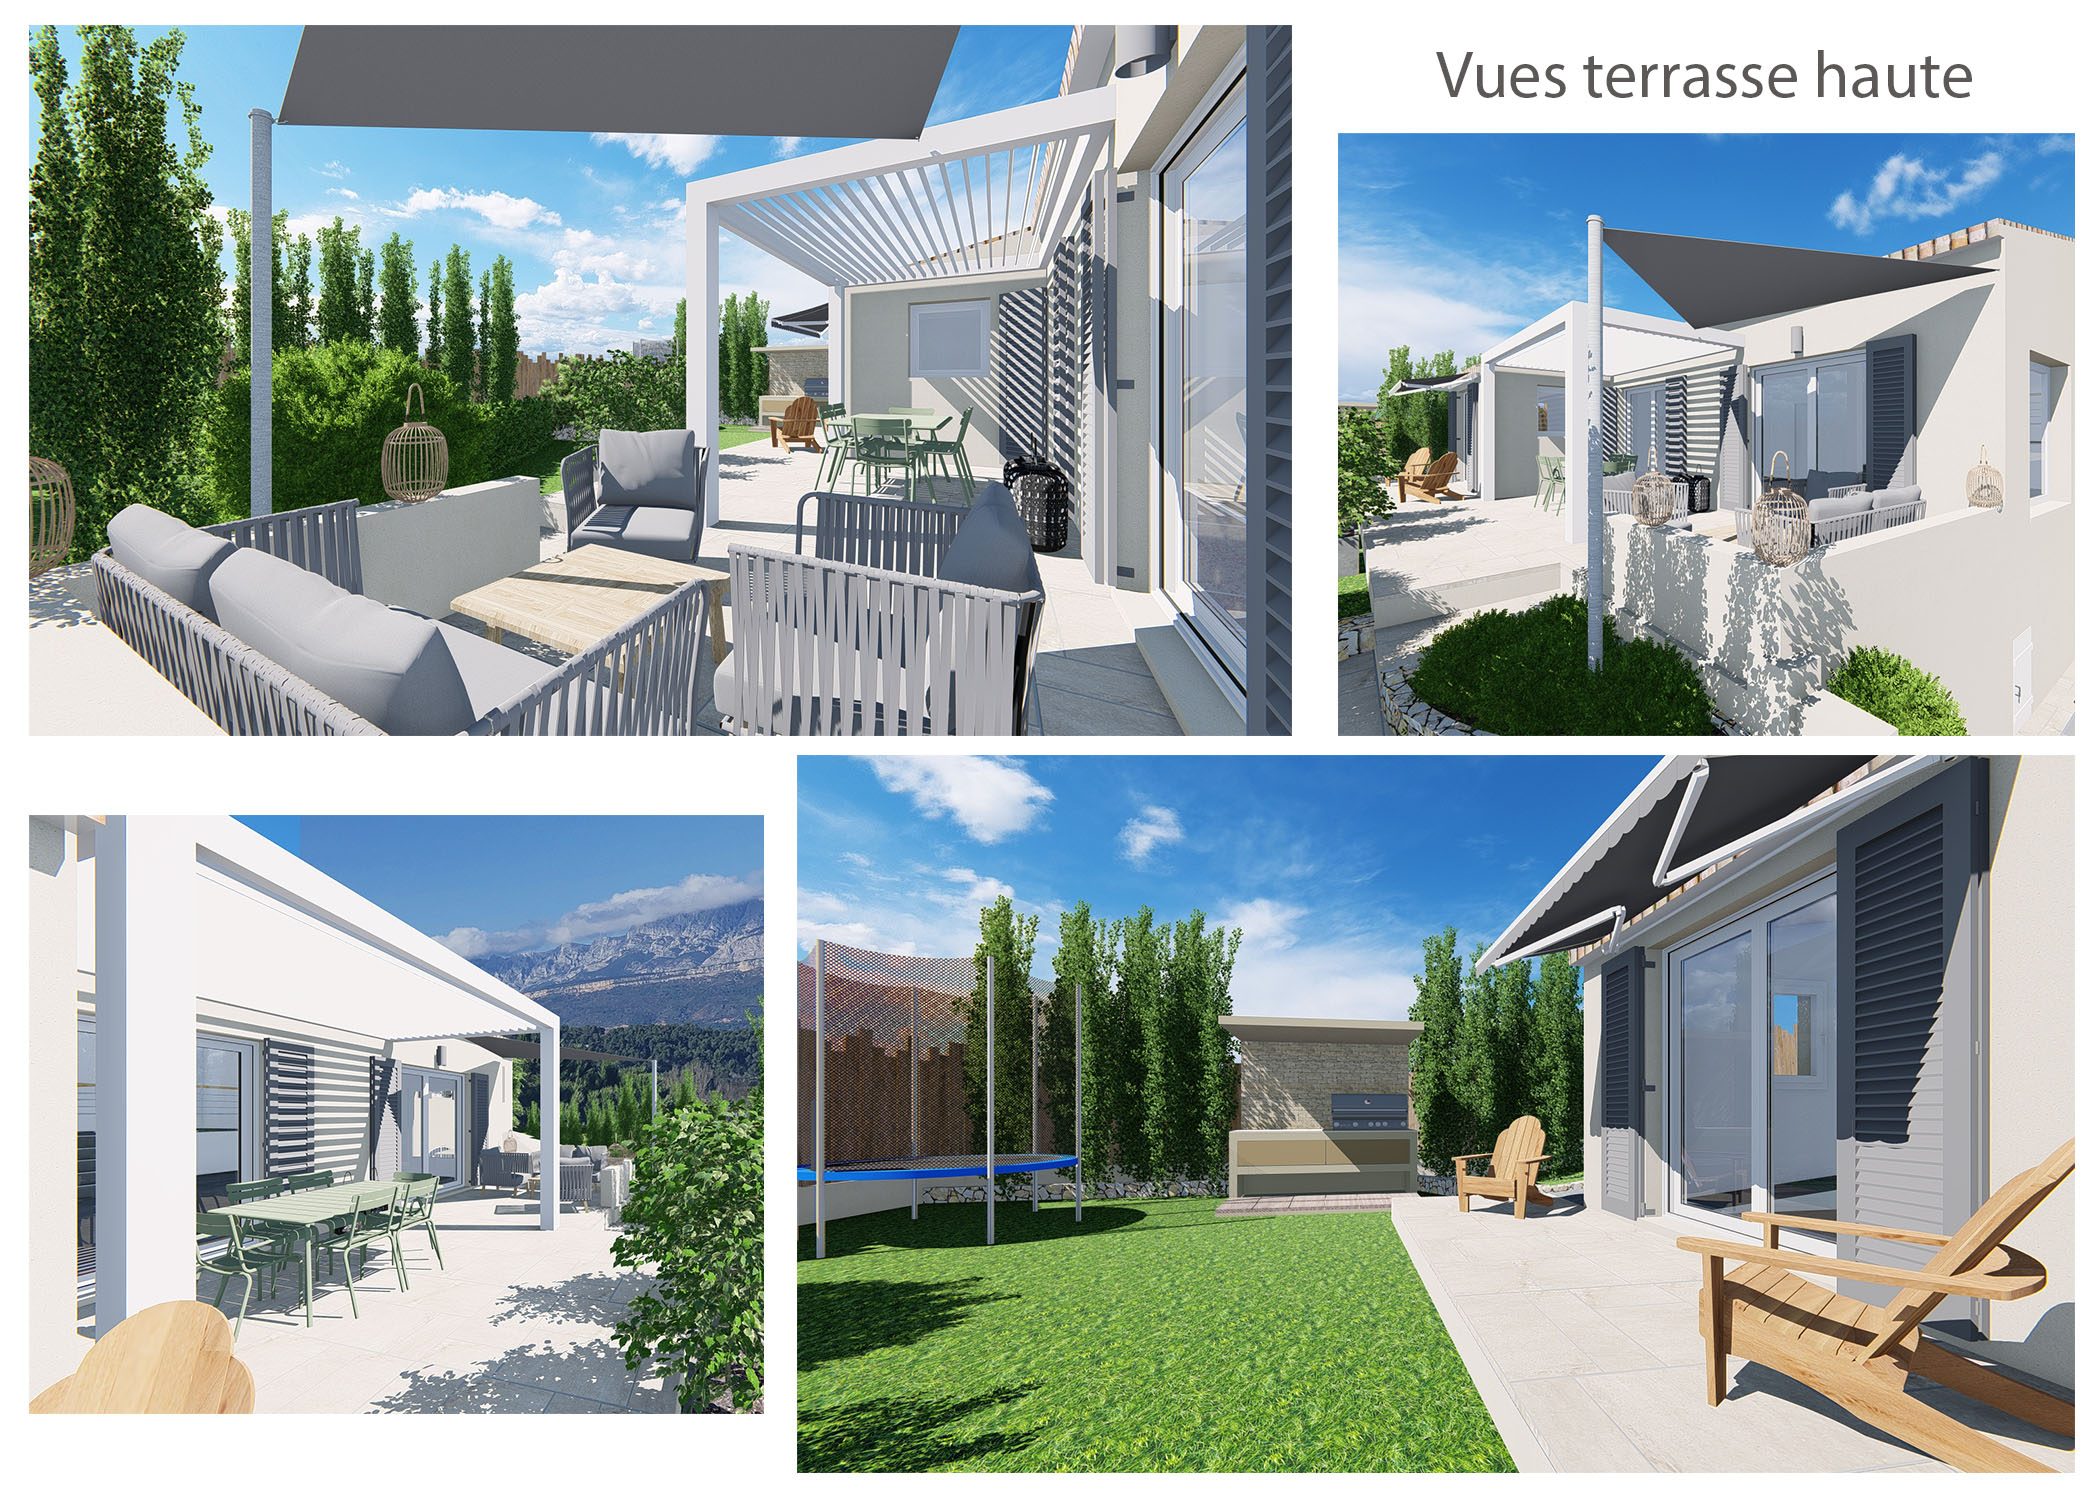 agencement-decoration-maison chateauneuf-le-rouge-vues terrasse haute-dekho design